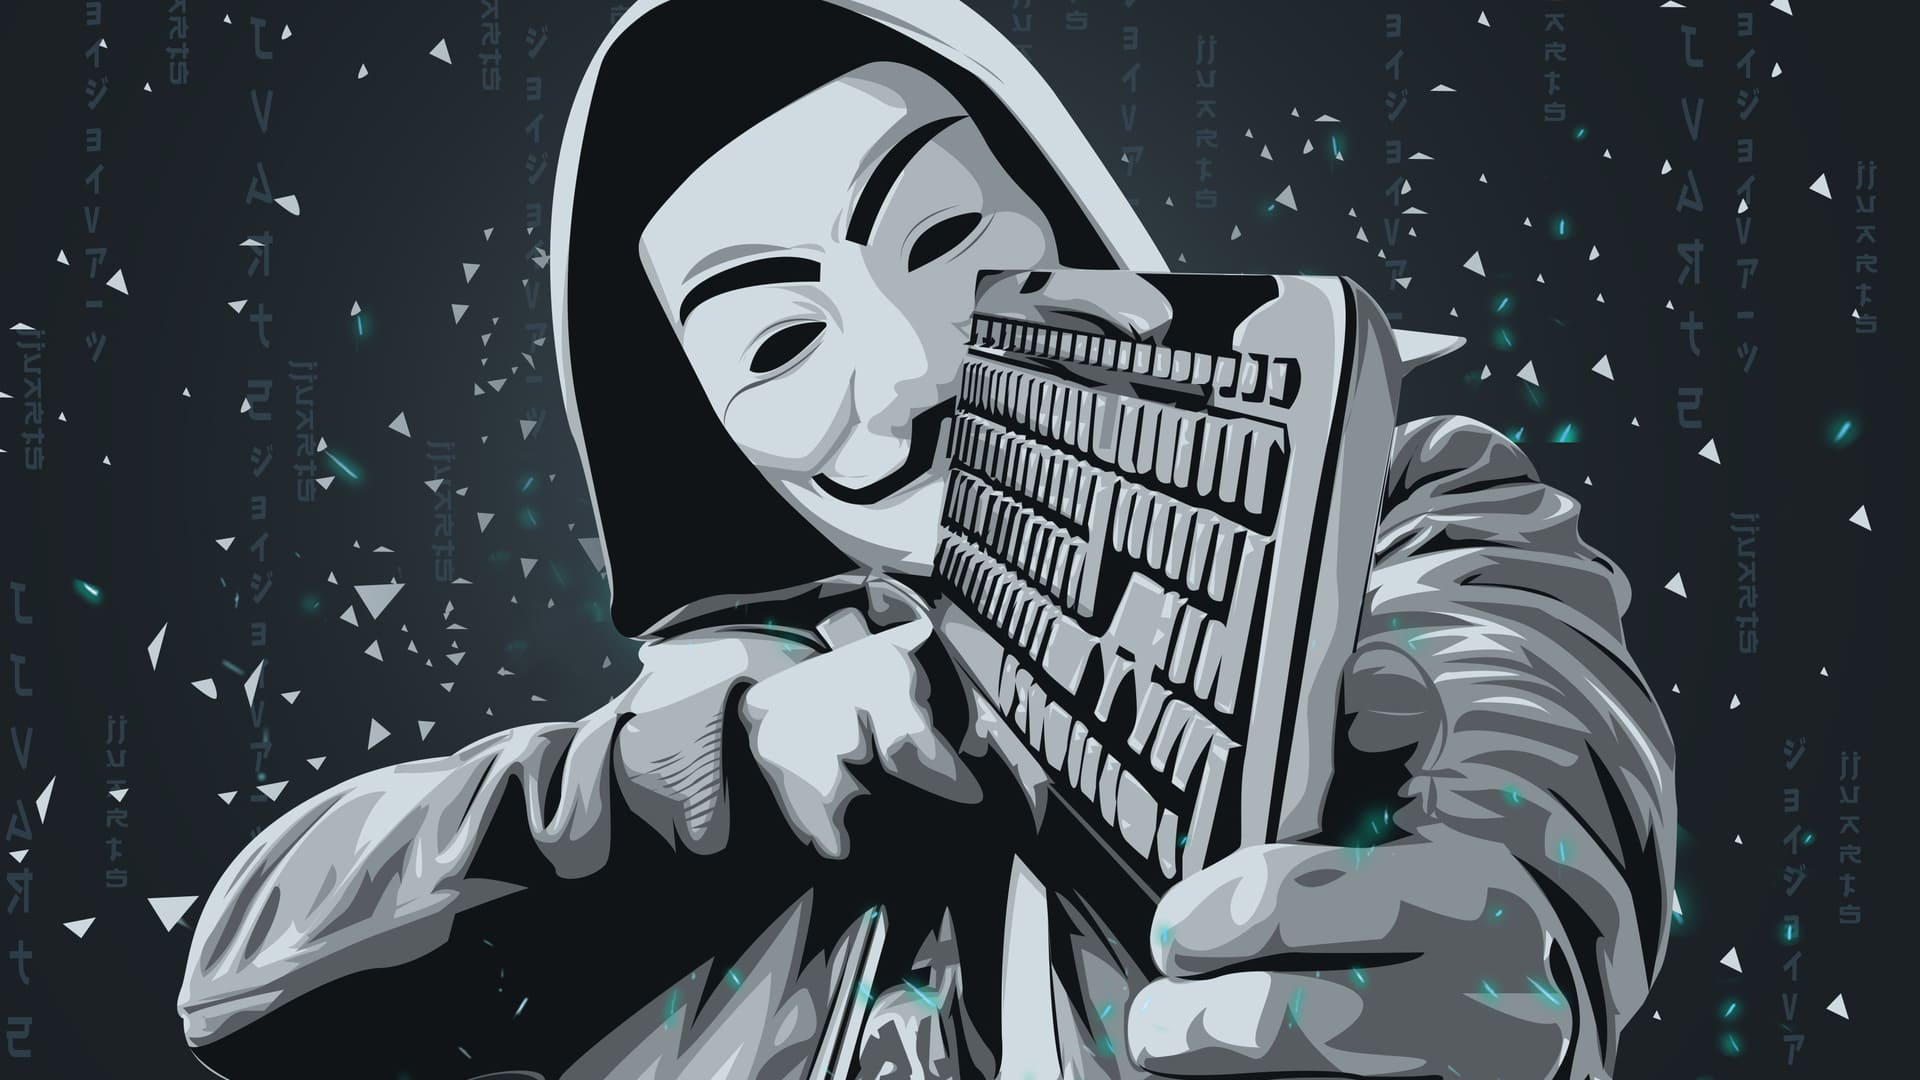 Guerra in rete: Anonymous  contro Killnet. Pubblicati i dati personali degli hacker filorussi